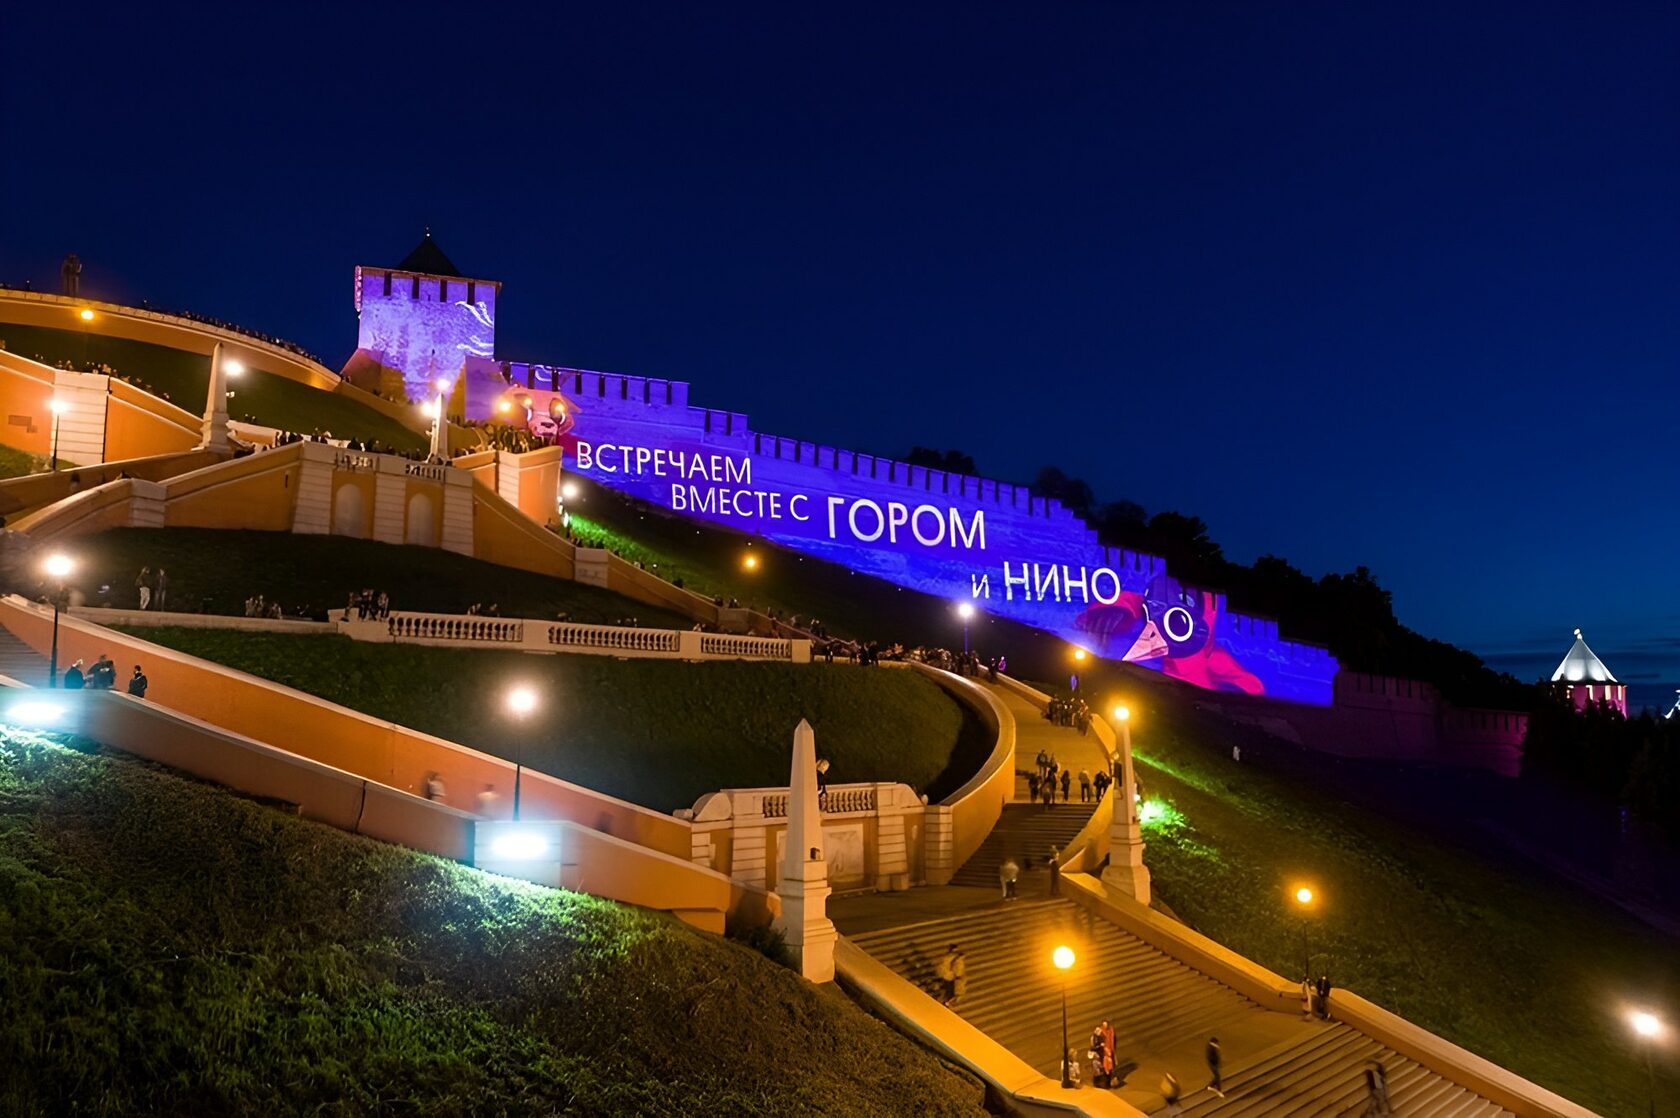 Празднование юбилея Нижнего Новгорода было самым масштабным культурным событием в истории города. Фото: Нижний 800